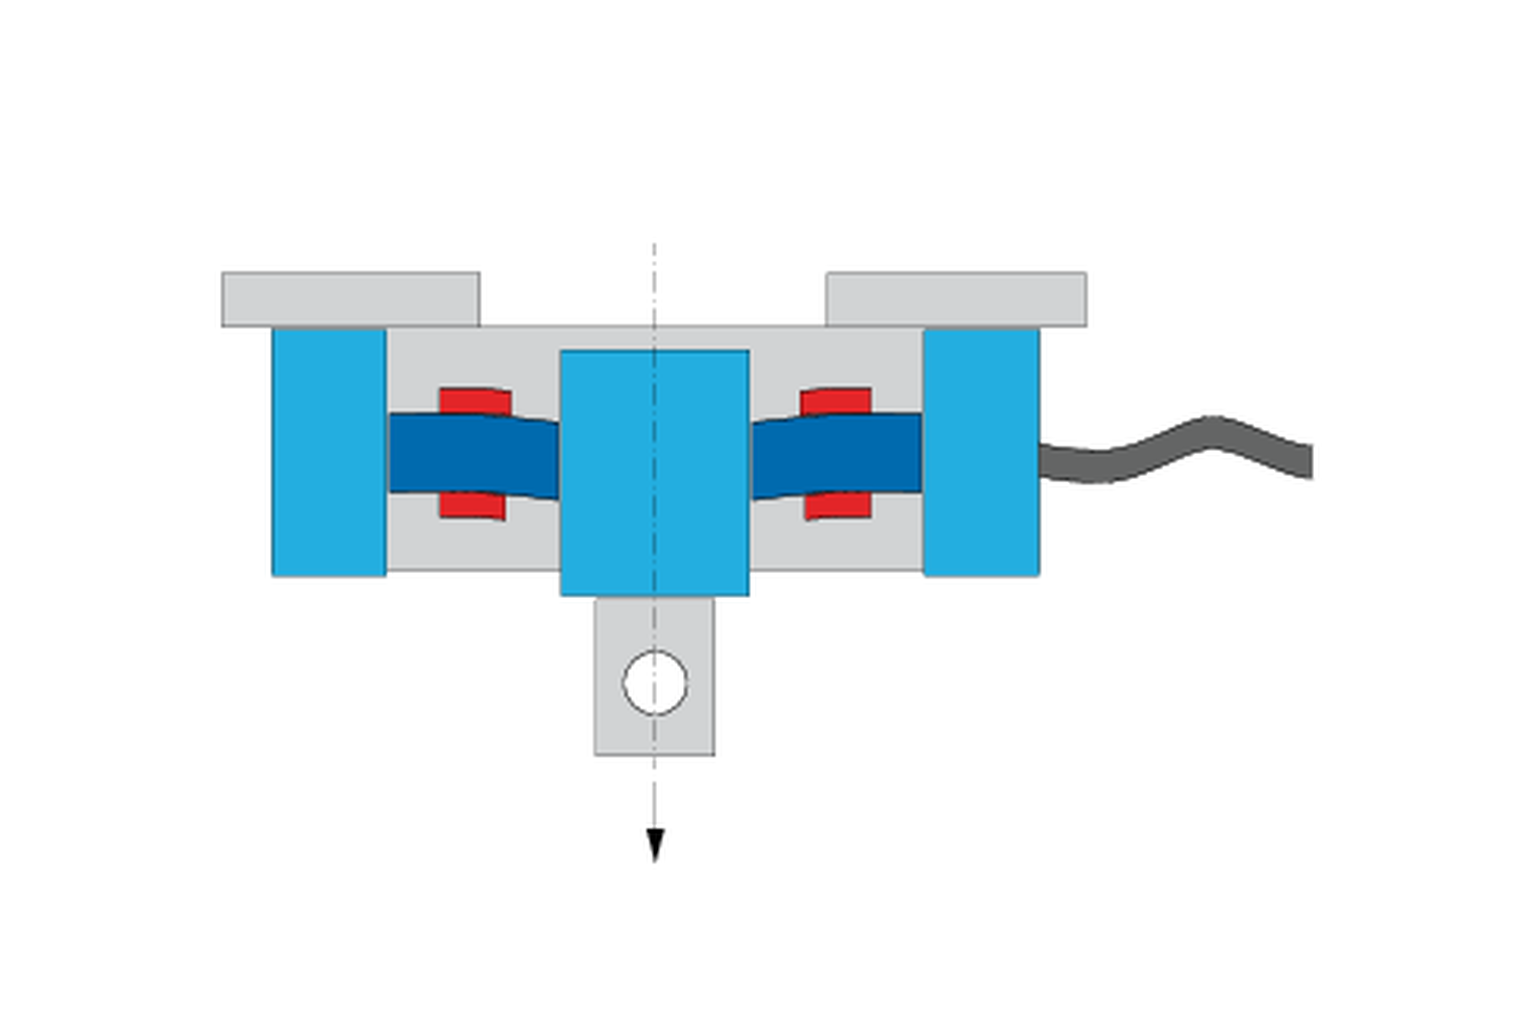 力传感器如何工作？应变片在伸长和压缩状态时的力传感器图示